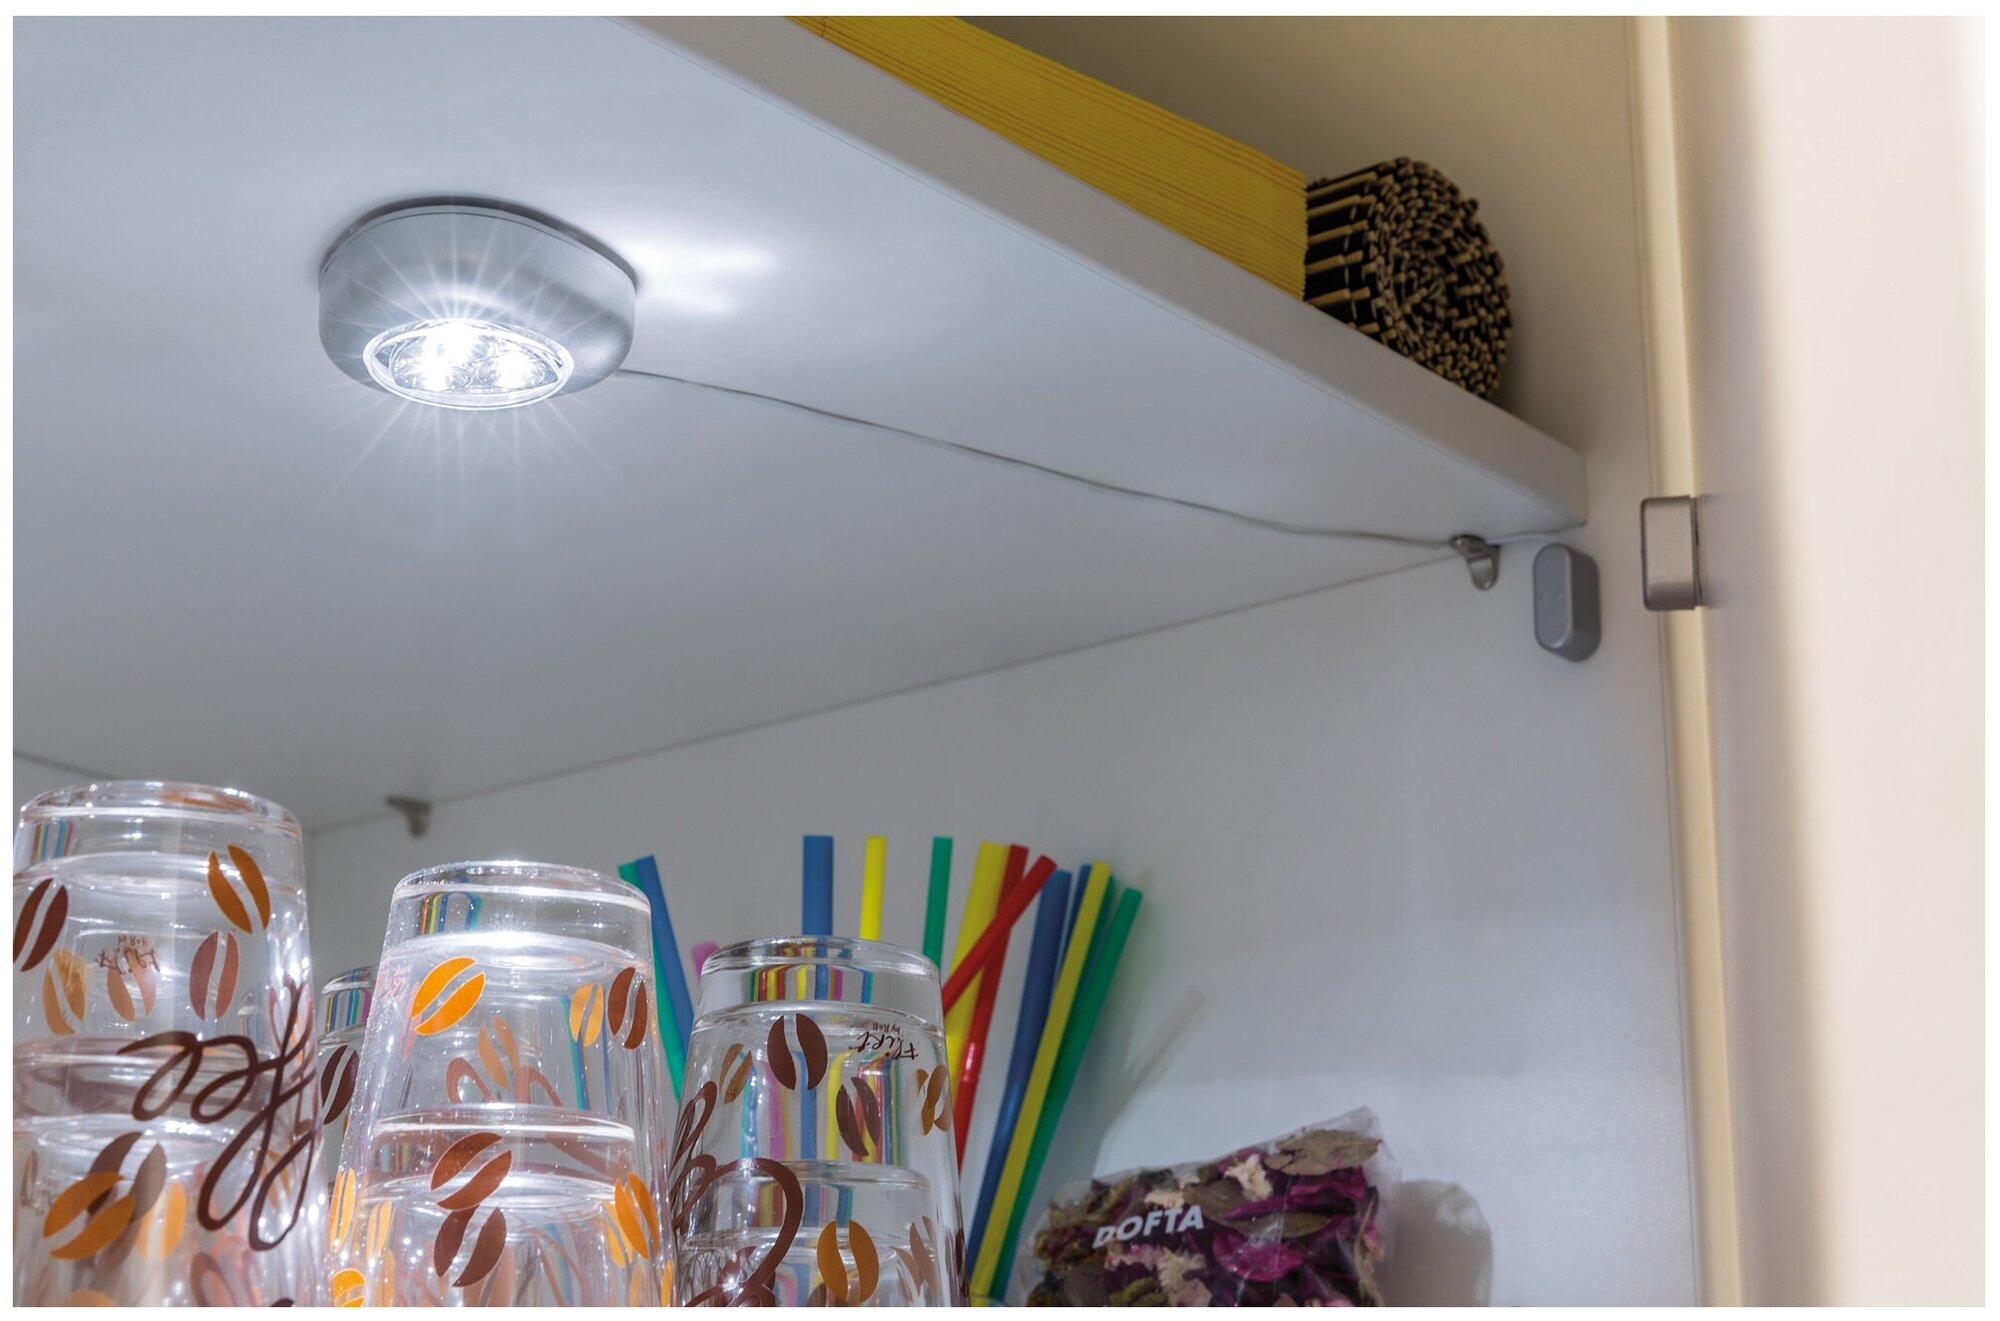 Светильники для кухни под шкафы накладные с выключателем